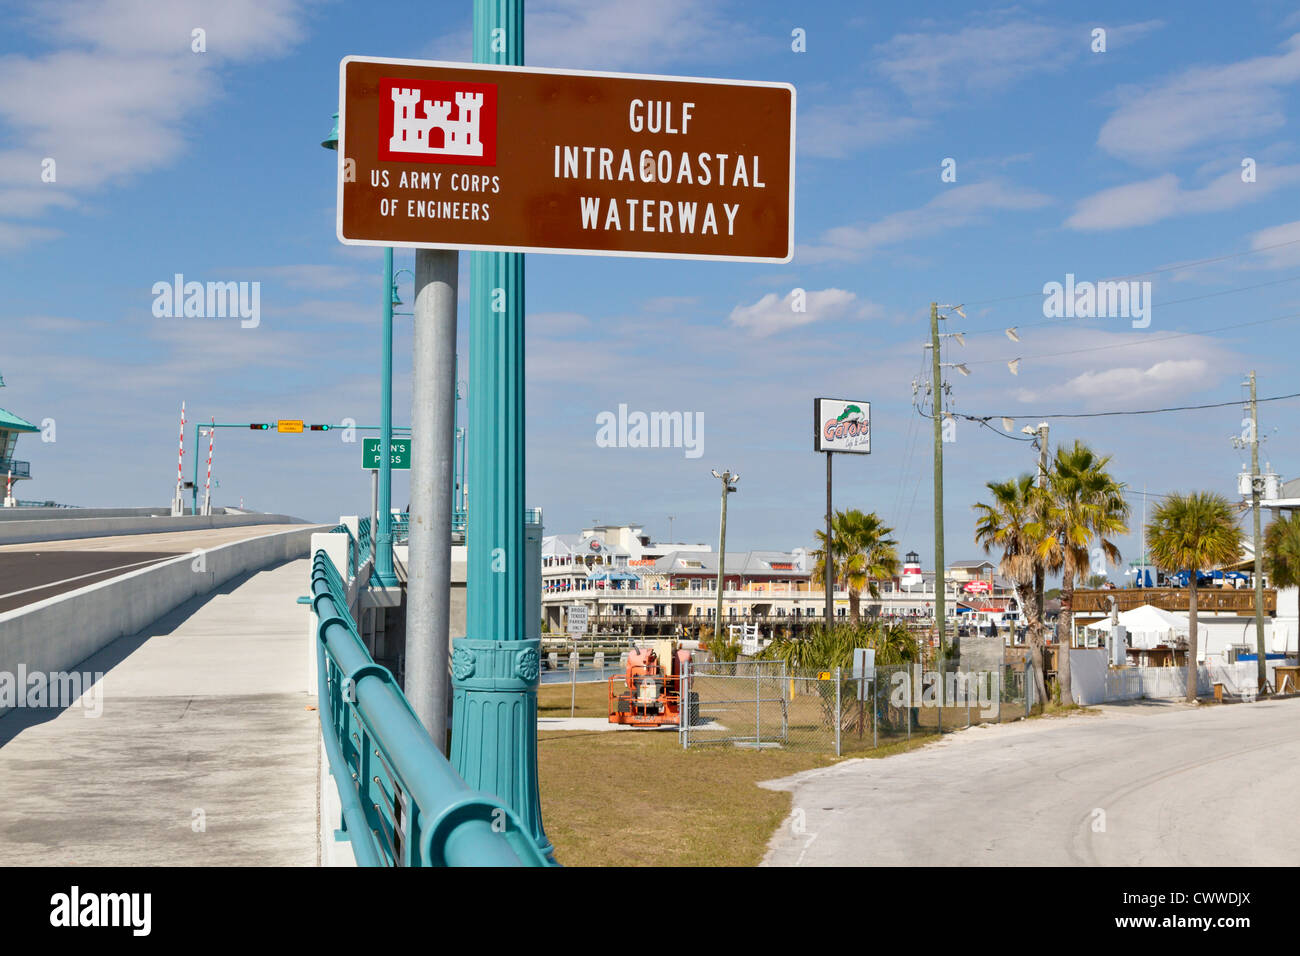 Signo en el John's Pass puente sobre el Golfo de Intracoastal Waterway en Madeira Beach, Florida Foto de stock